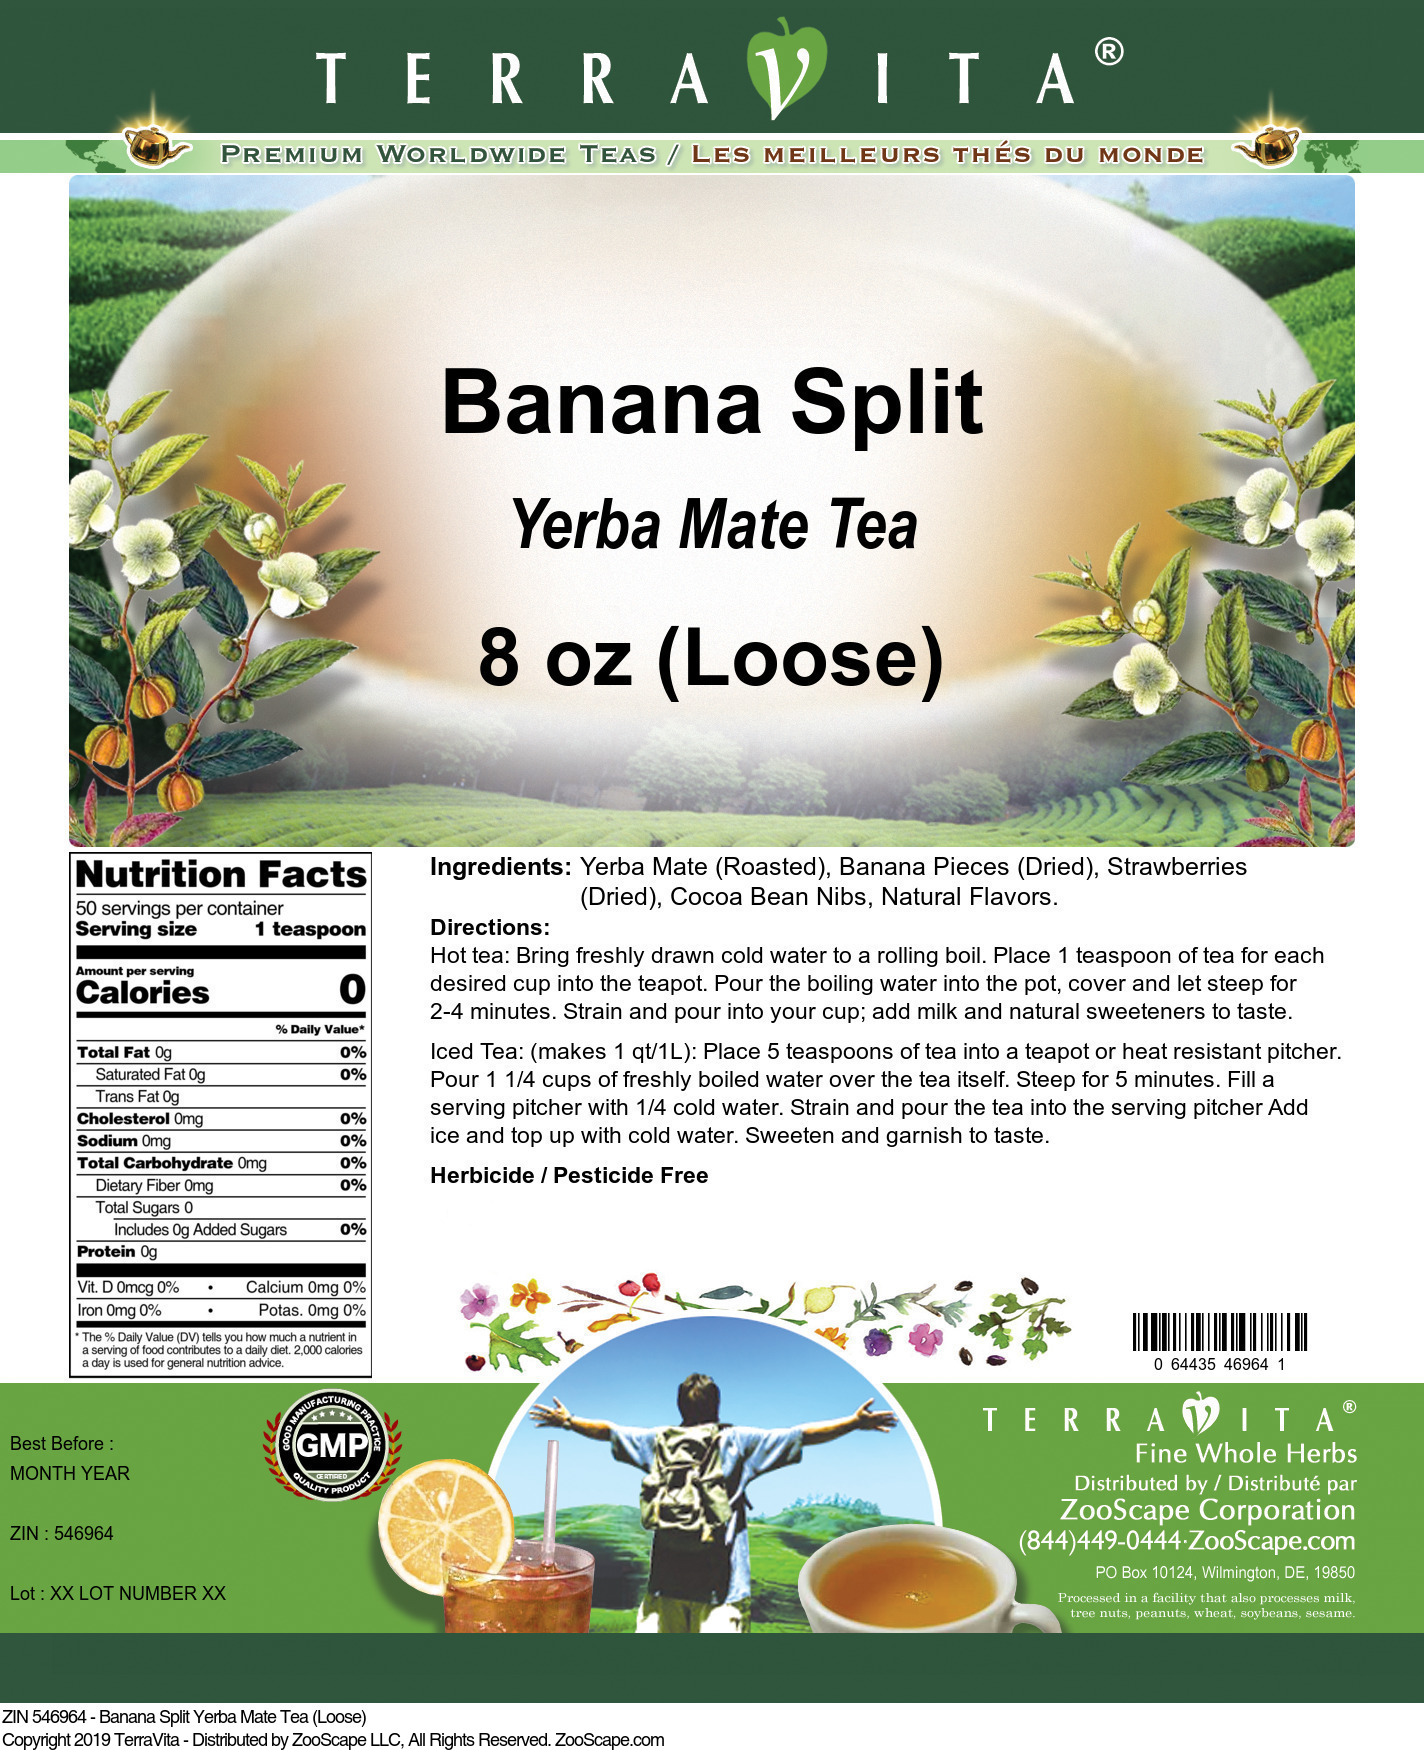 Banana Split Yerba Mate Tea (Loose) - Label